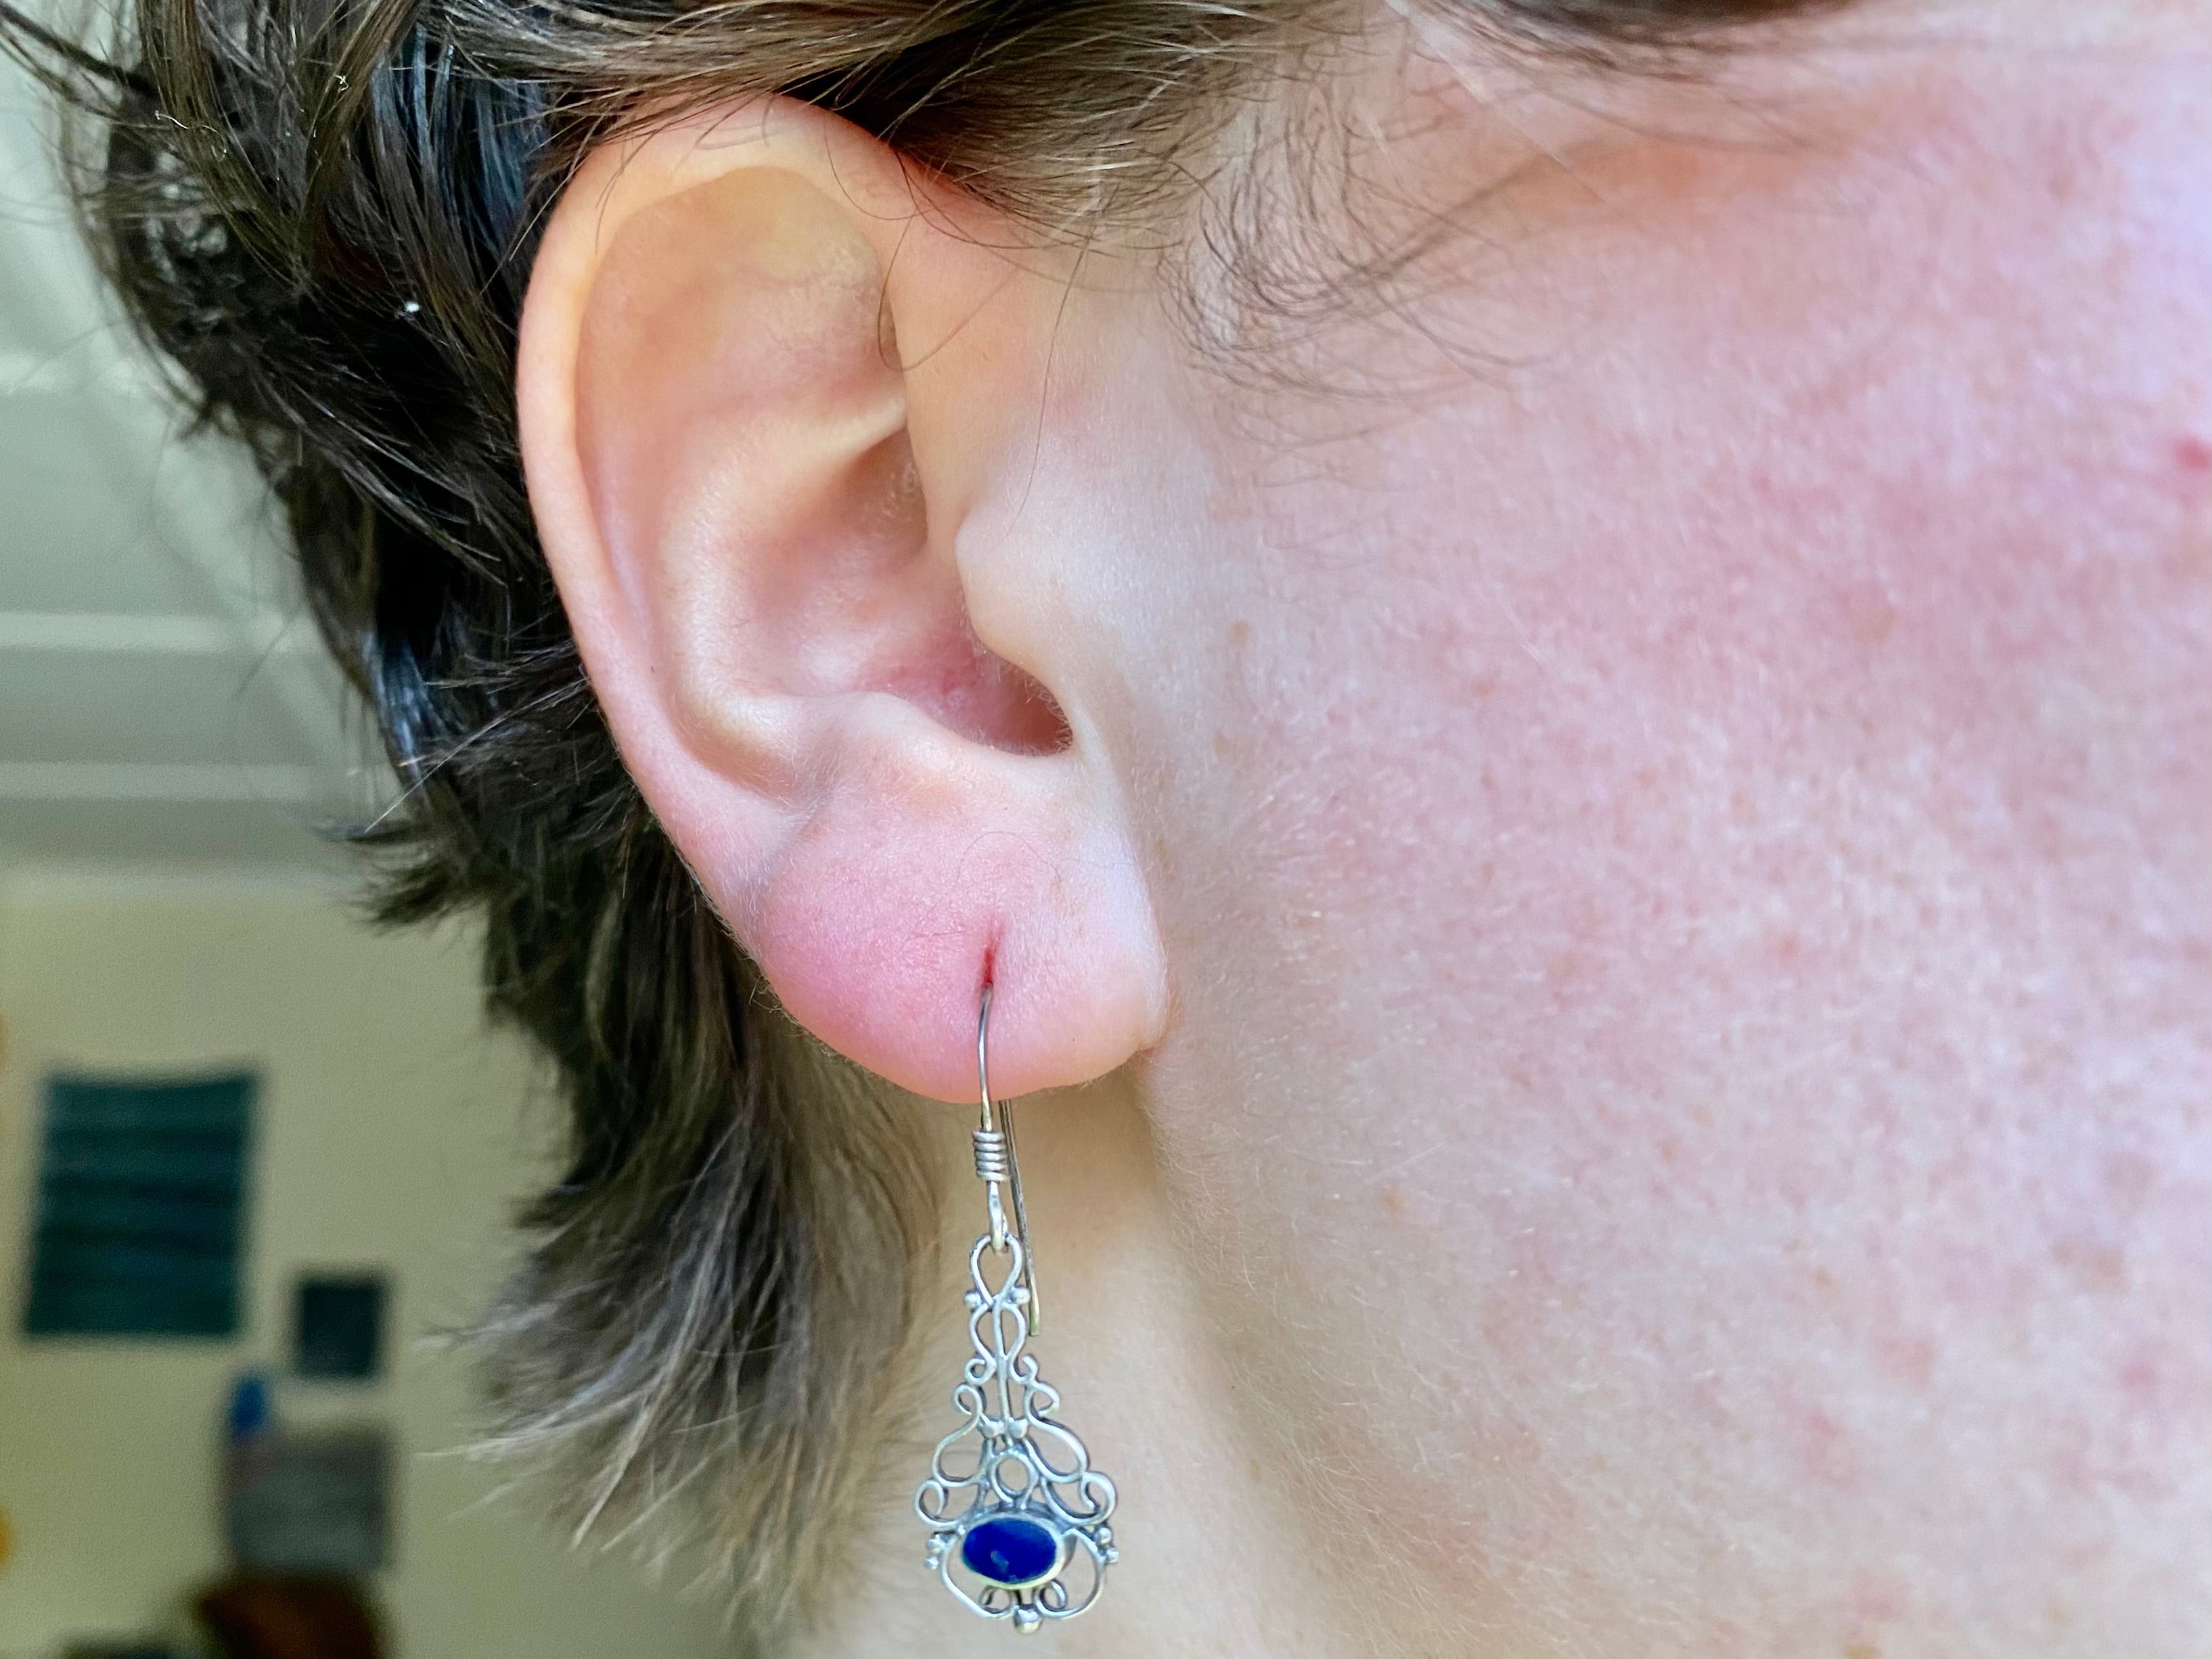 Vintage sterling & lapis lazuli drop earrings